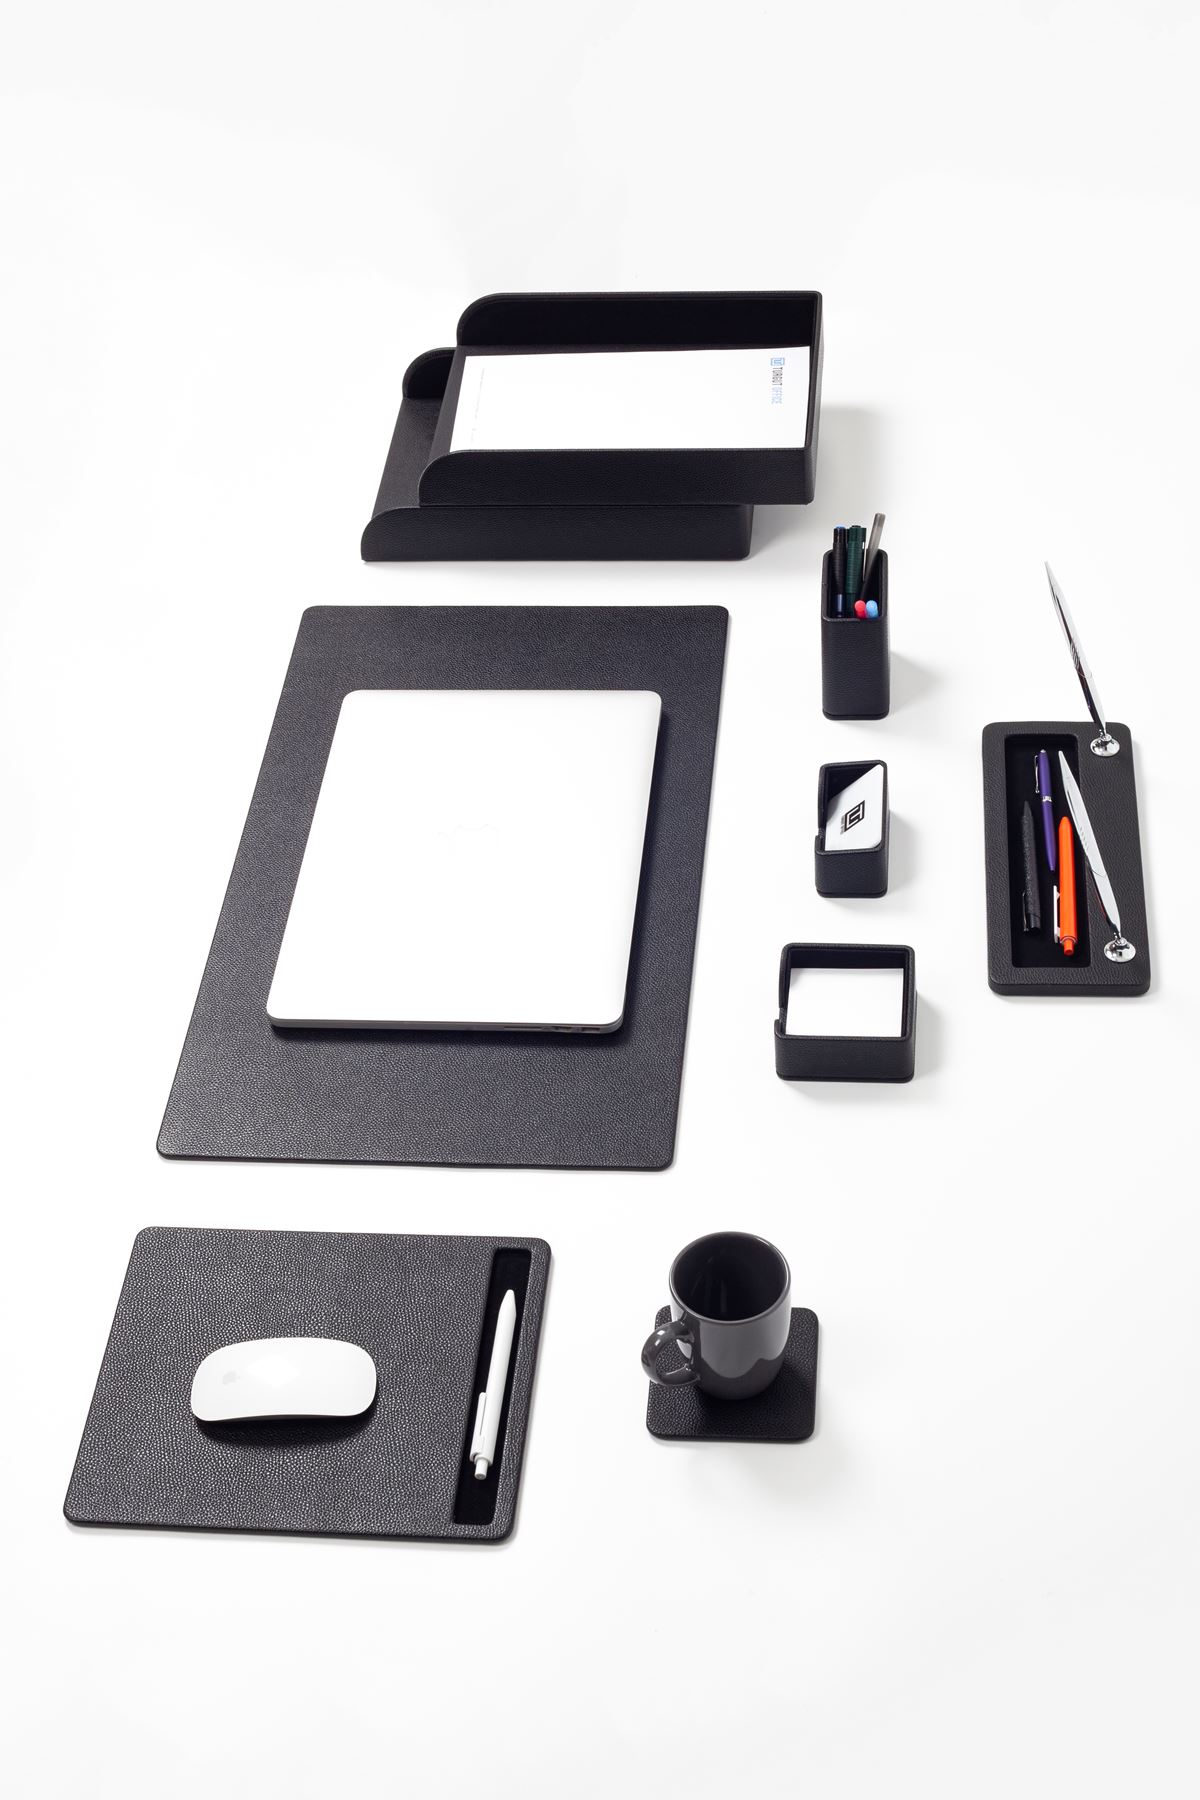 Milan Leather Desk Set Black 9 Pieces